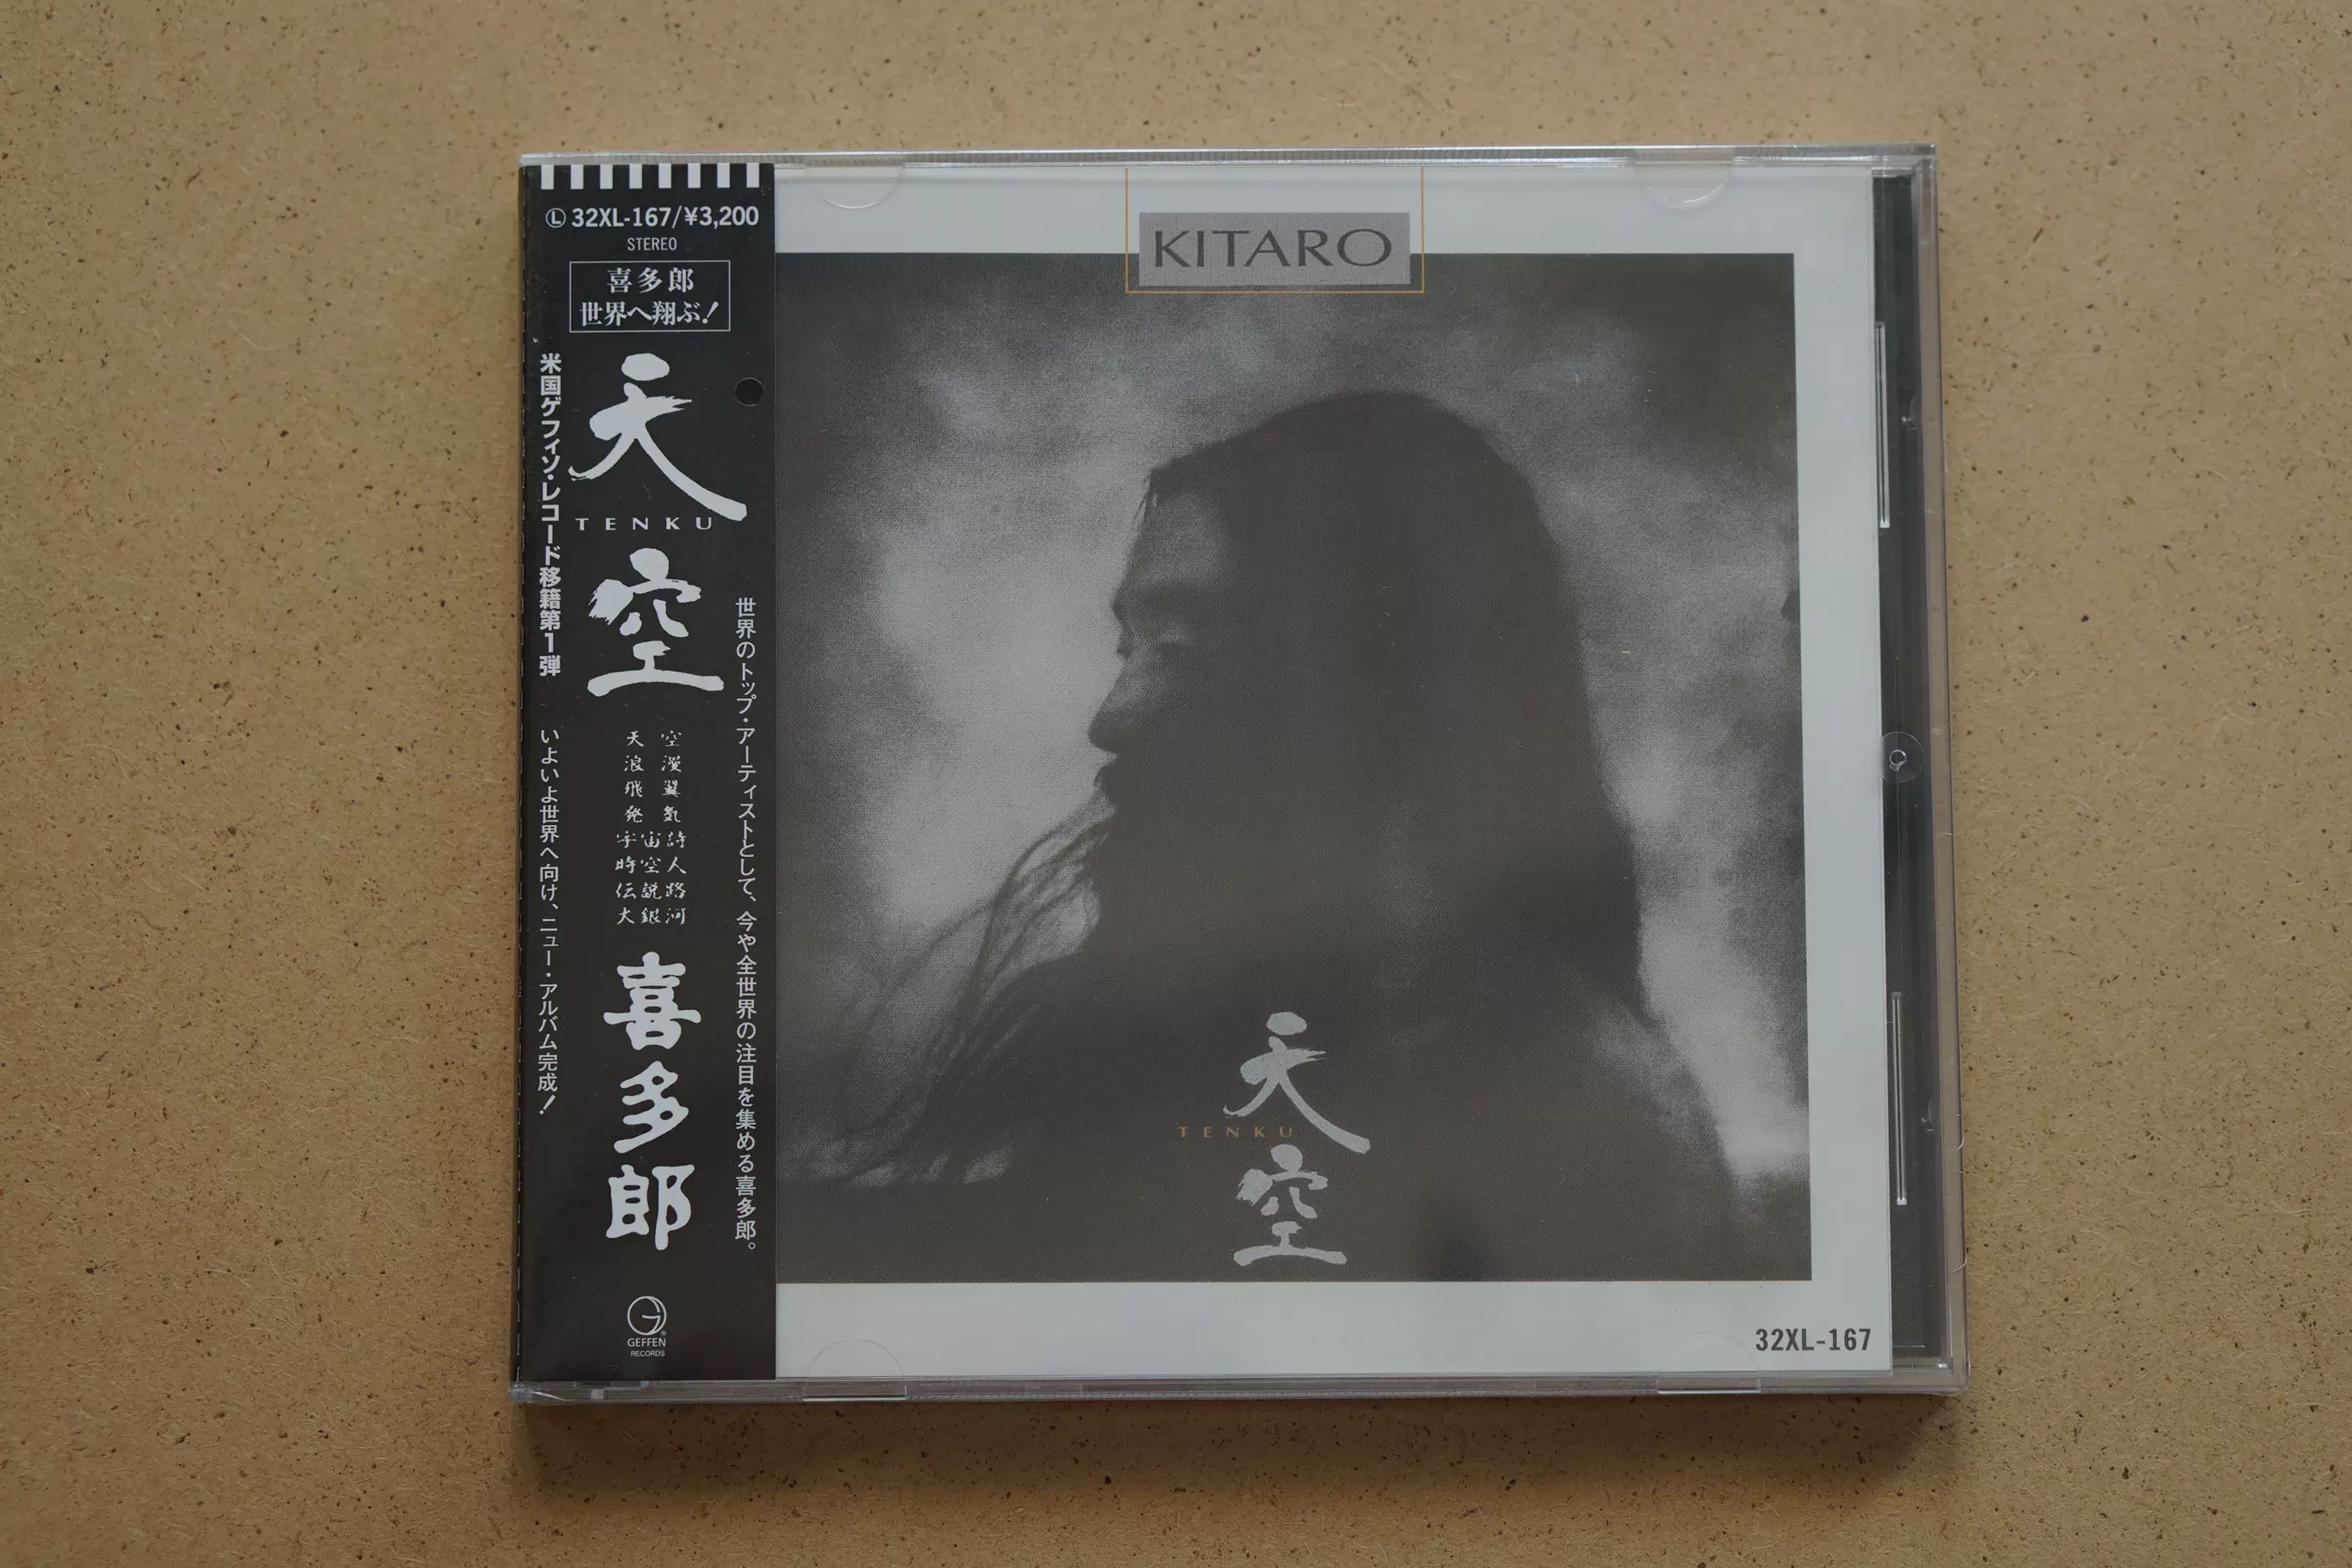 發燒碟喜多郎天空KITARO/TENKU CD 現貨-Taobao